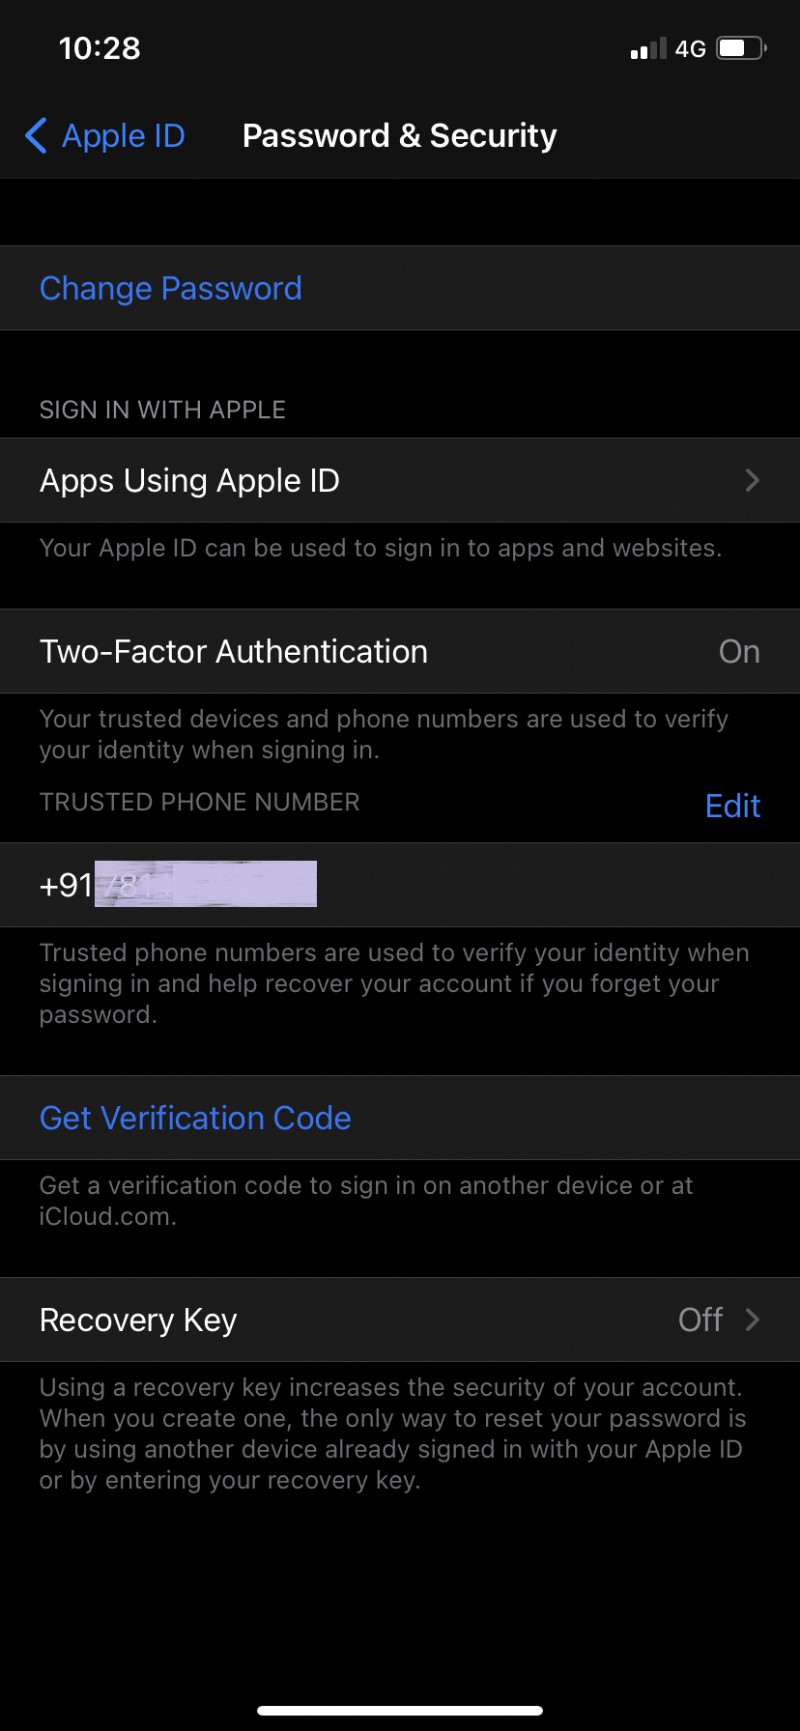 วิธีรีเซ็ตคำถามเพื่อความปลอดภัยของ Apple ID 